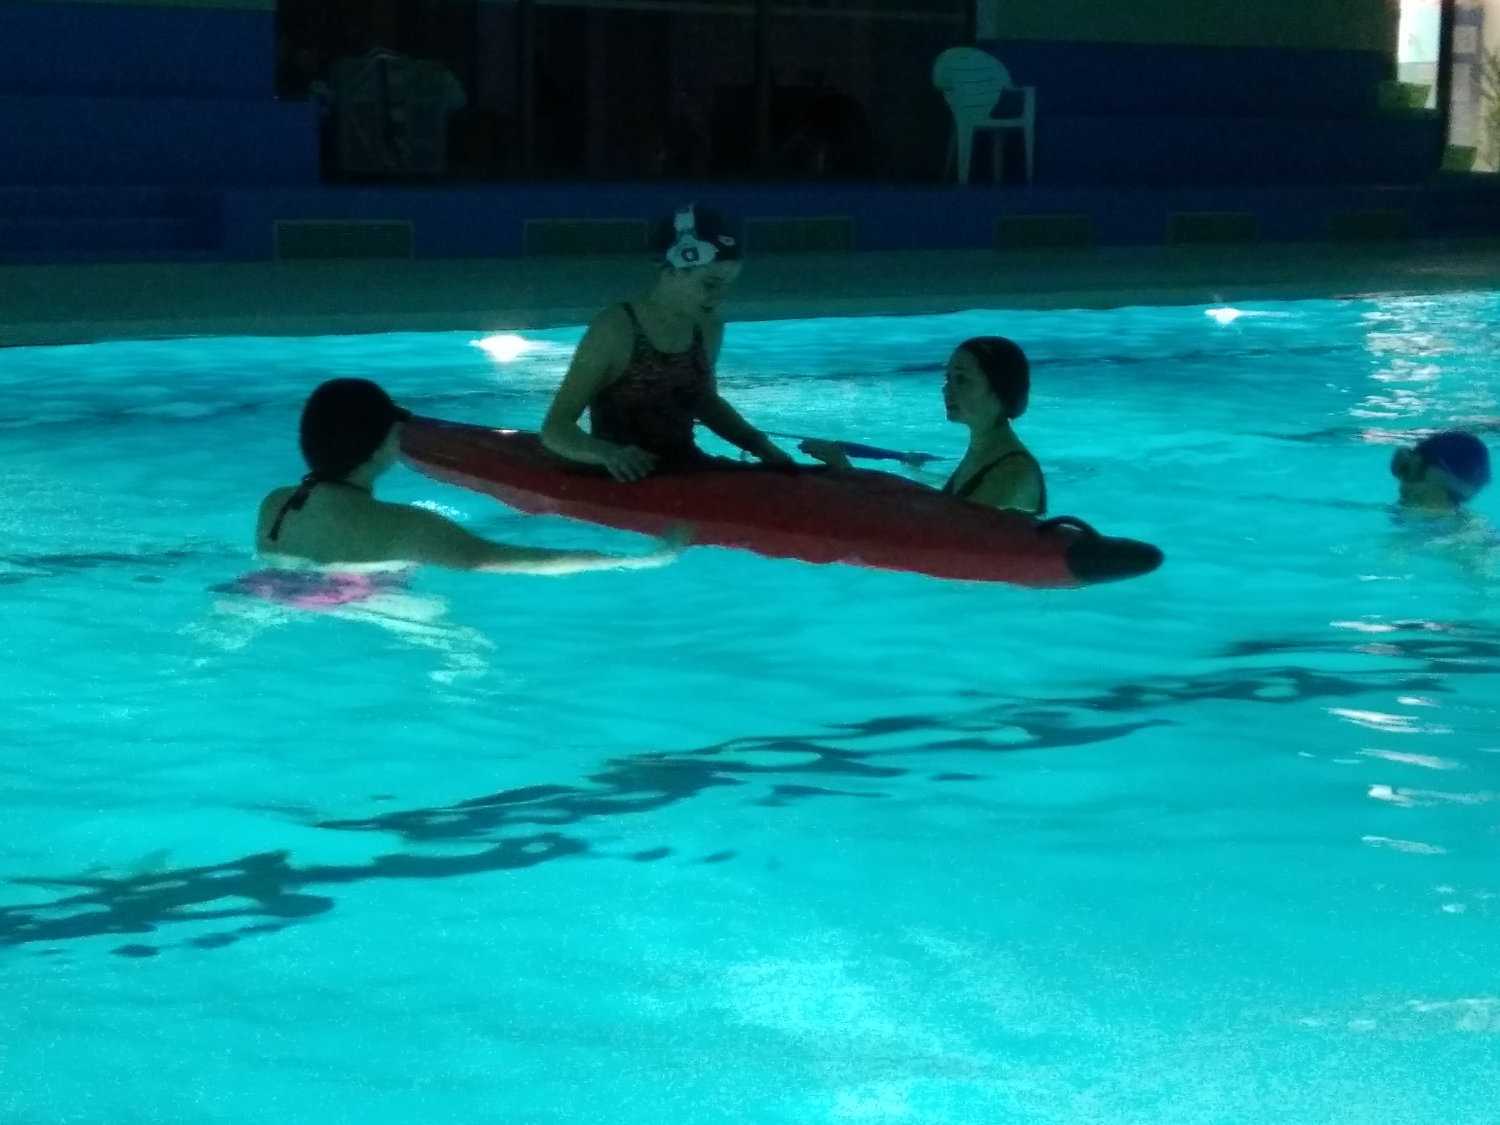 "Kayak en piscine"